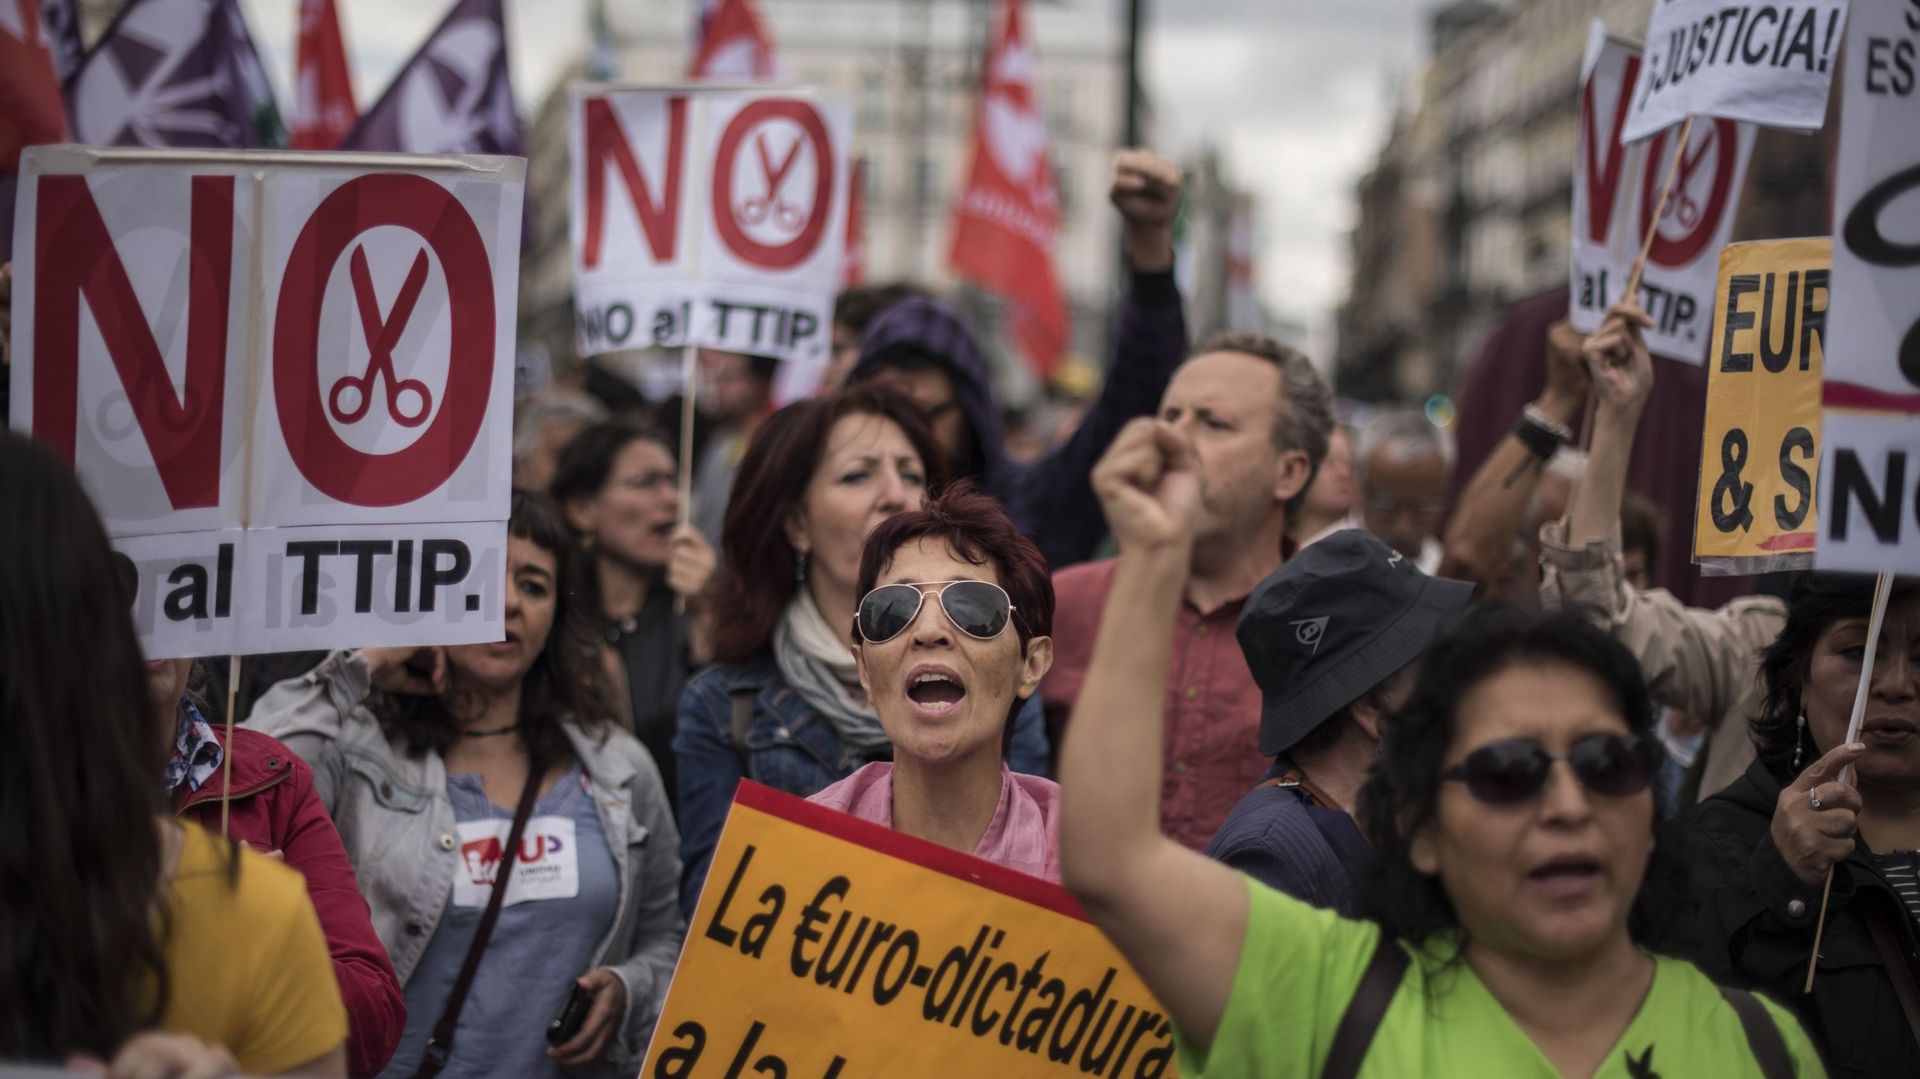 A Madrid ce samedi, différents cortèges ont conflué vers la Puerta del Sol pour se retrouver face à la banderole "Pour une rébellion démocratique des peuples d'Europe, souveraineté, dignité, solidarité".